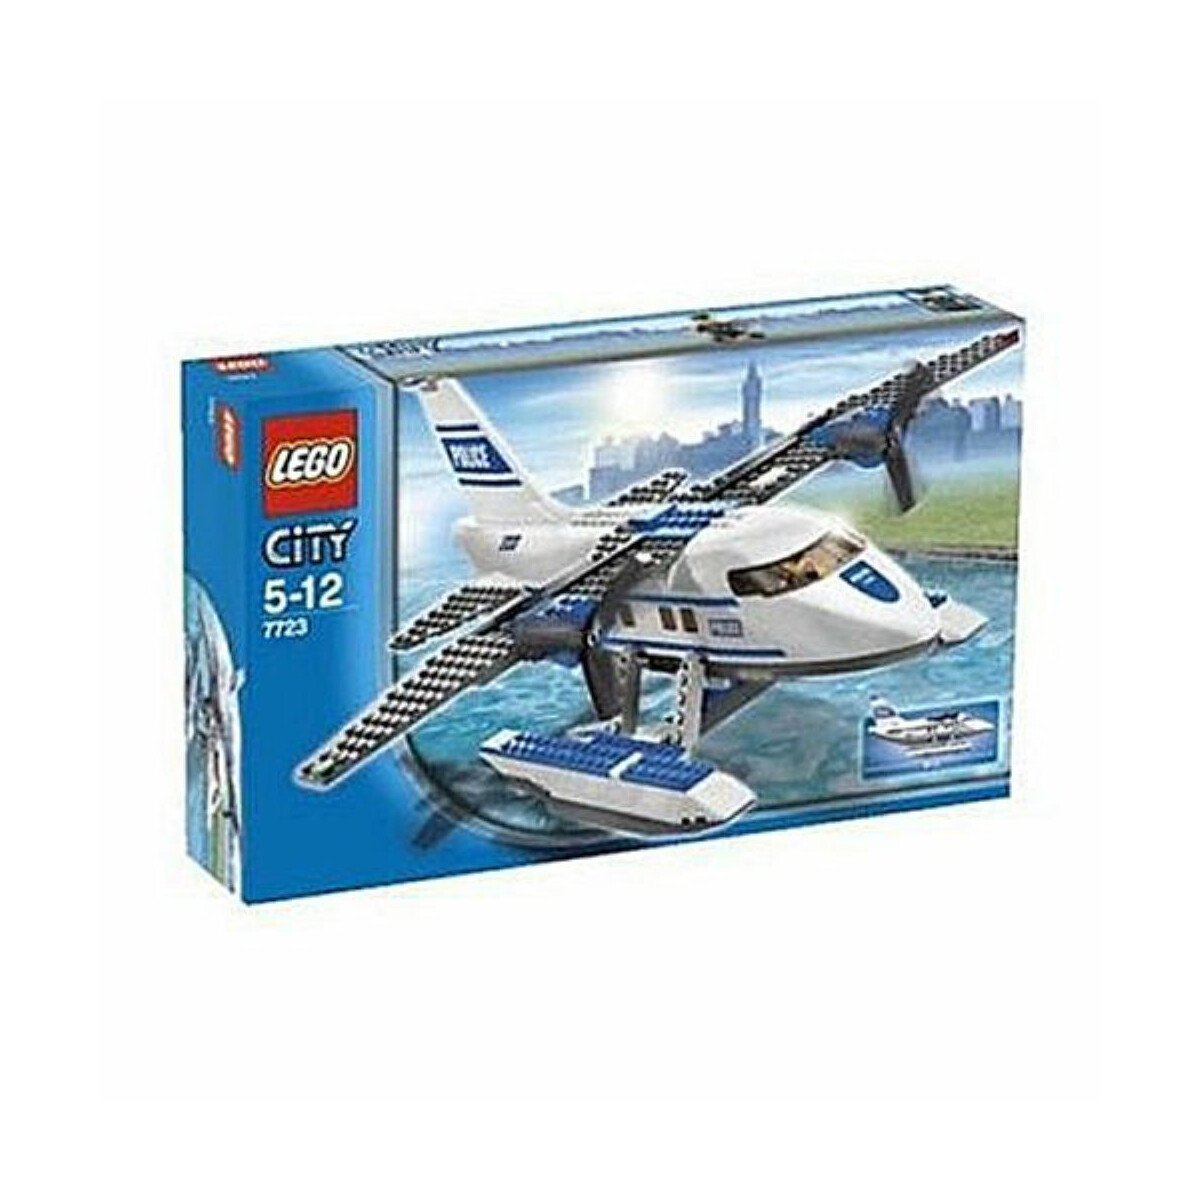 LEGO® City 7723 - Polizei Wasserflugzeug - Shopping-Stop.de, 109,00 €